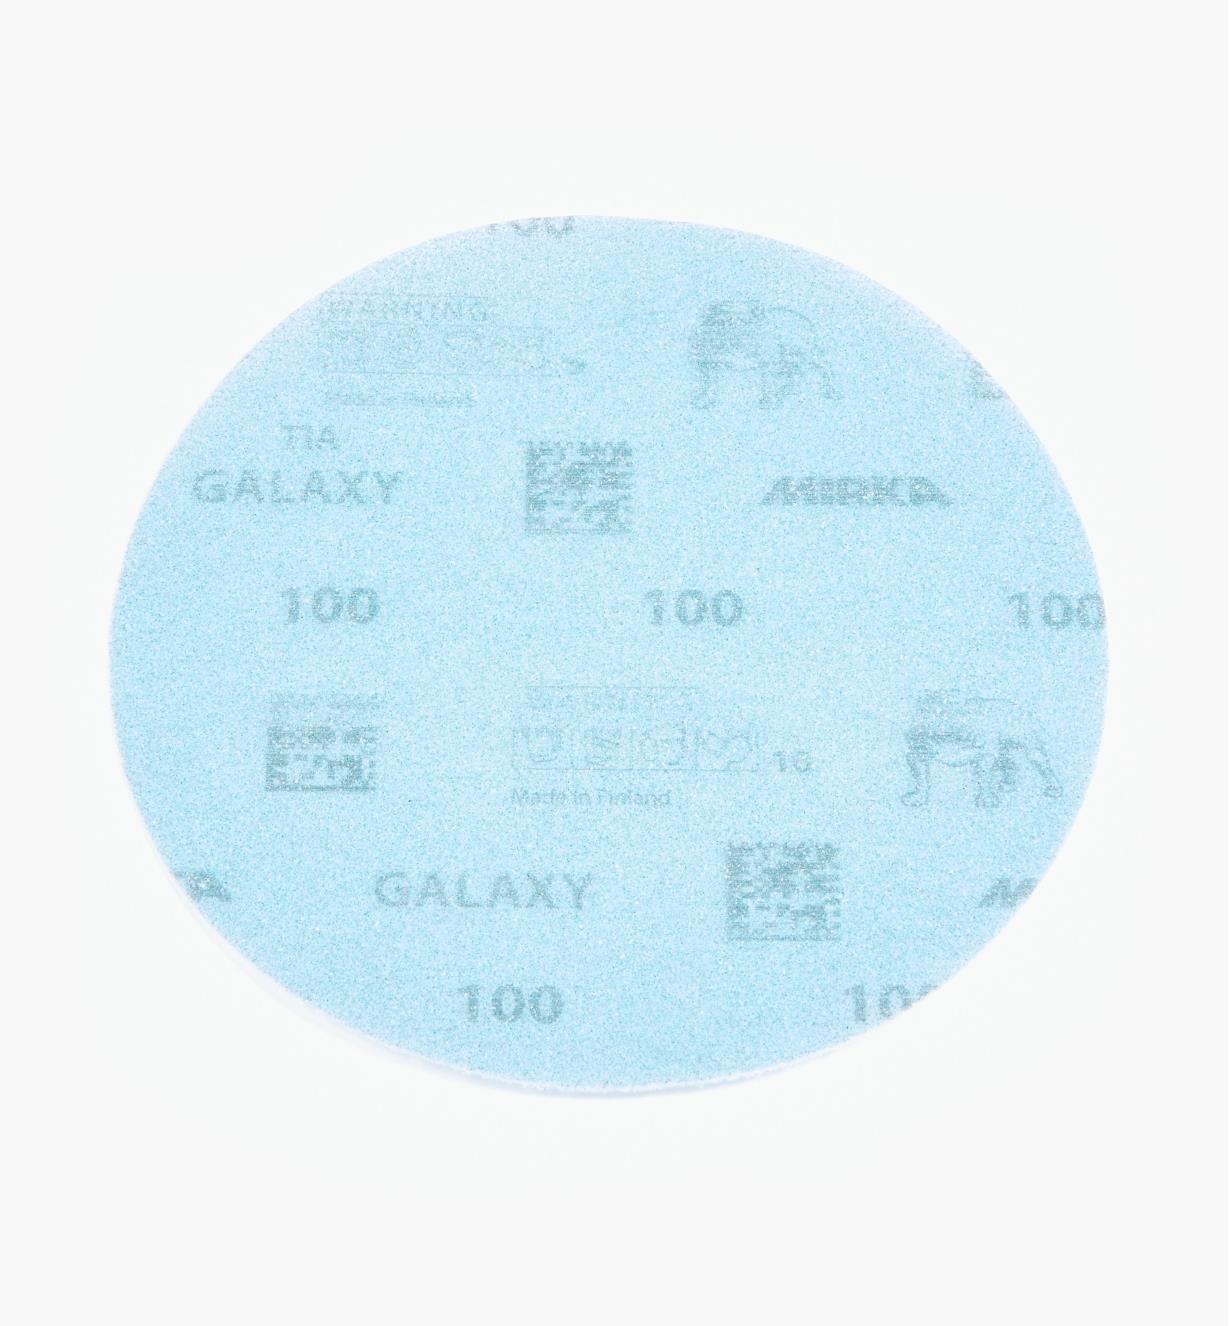 08K2104 - Disque abrasif autoagrippant Galaxy, 6 po, grain 100, l'unité